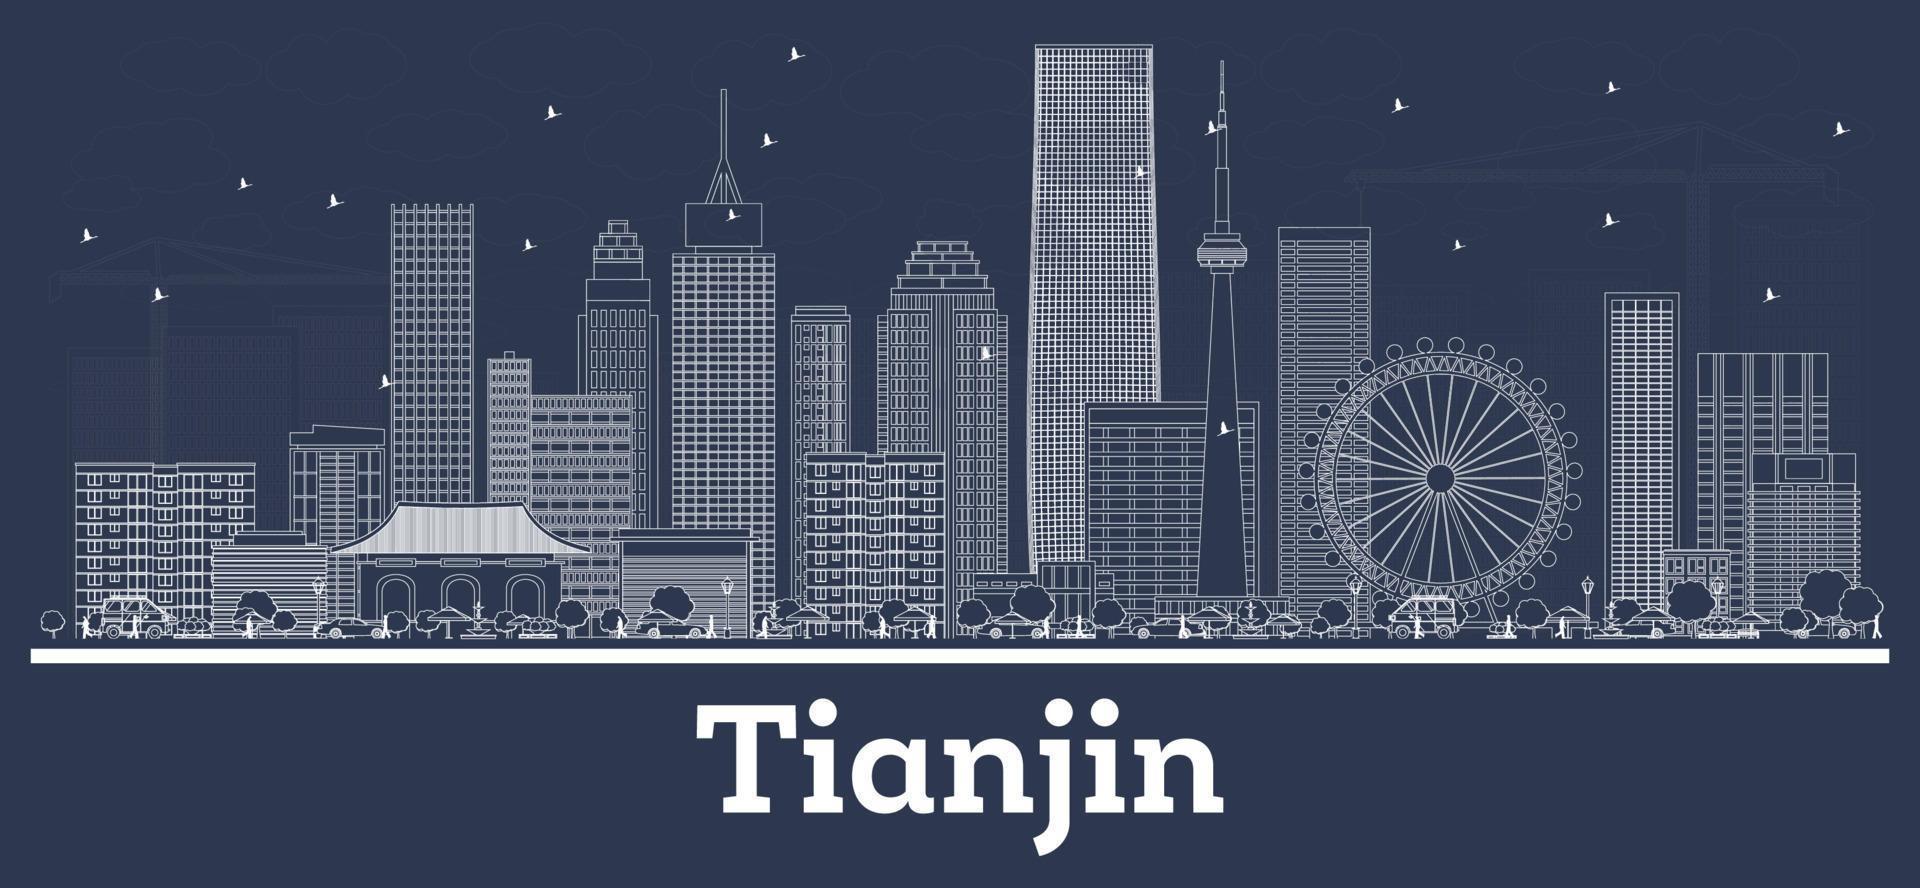 delinear el horizonte de la ciudad de tianjin china con edificios blancos. vector